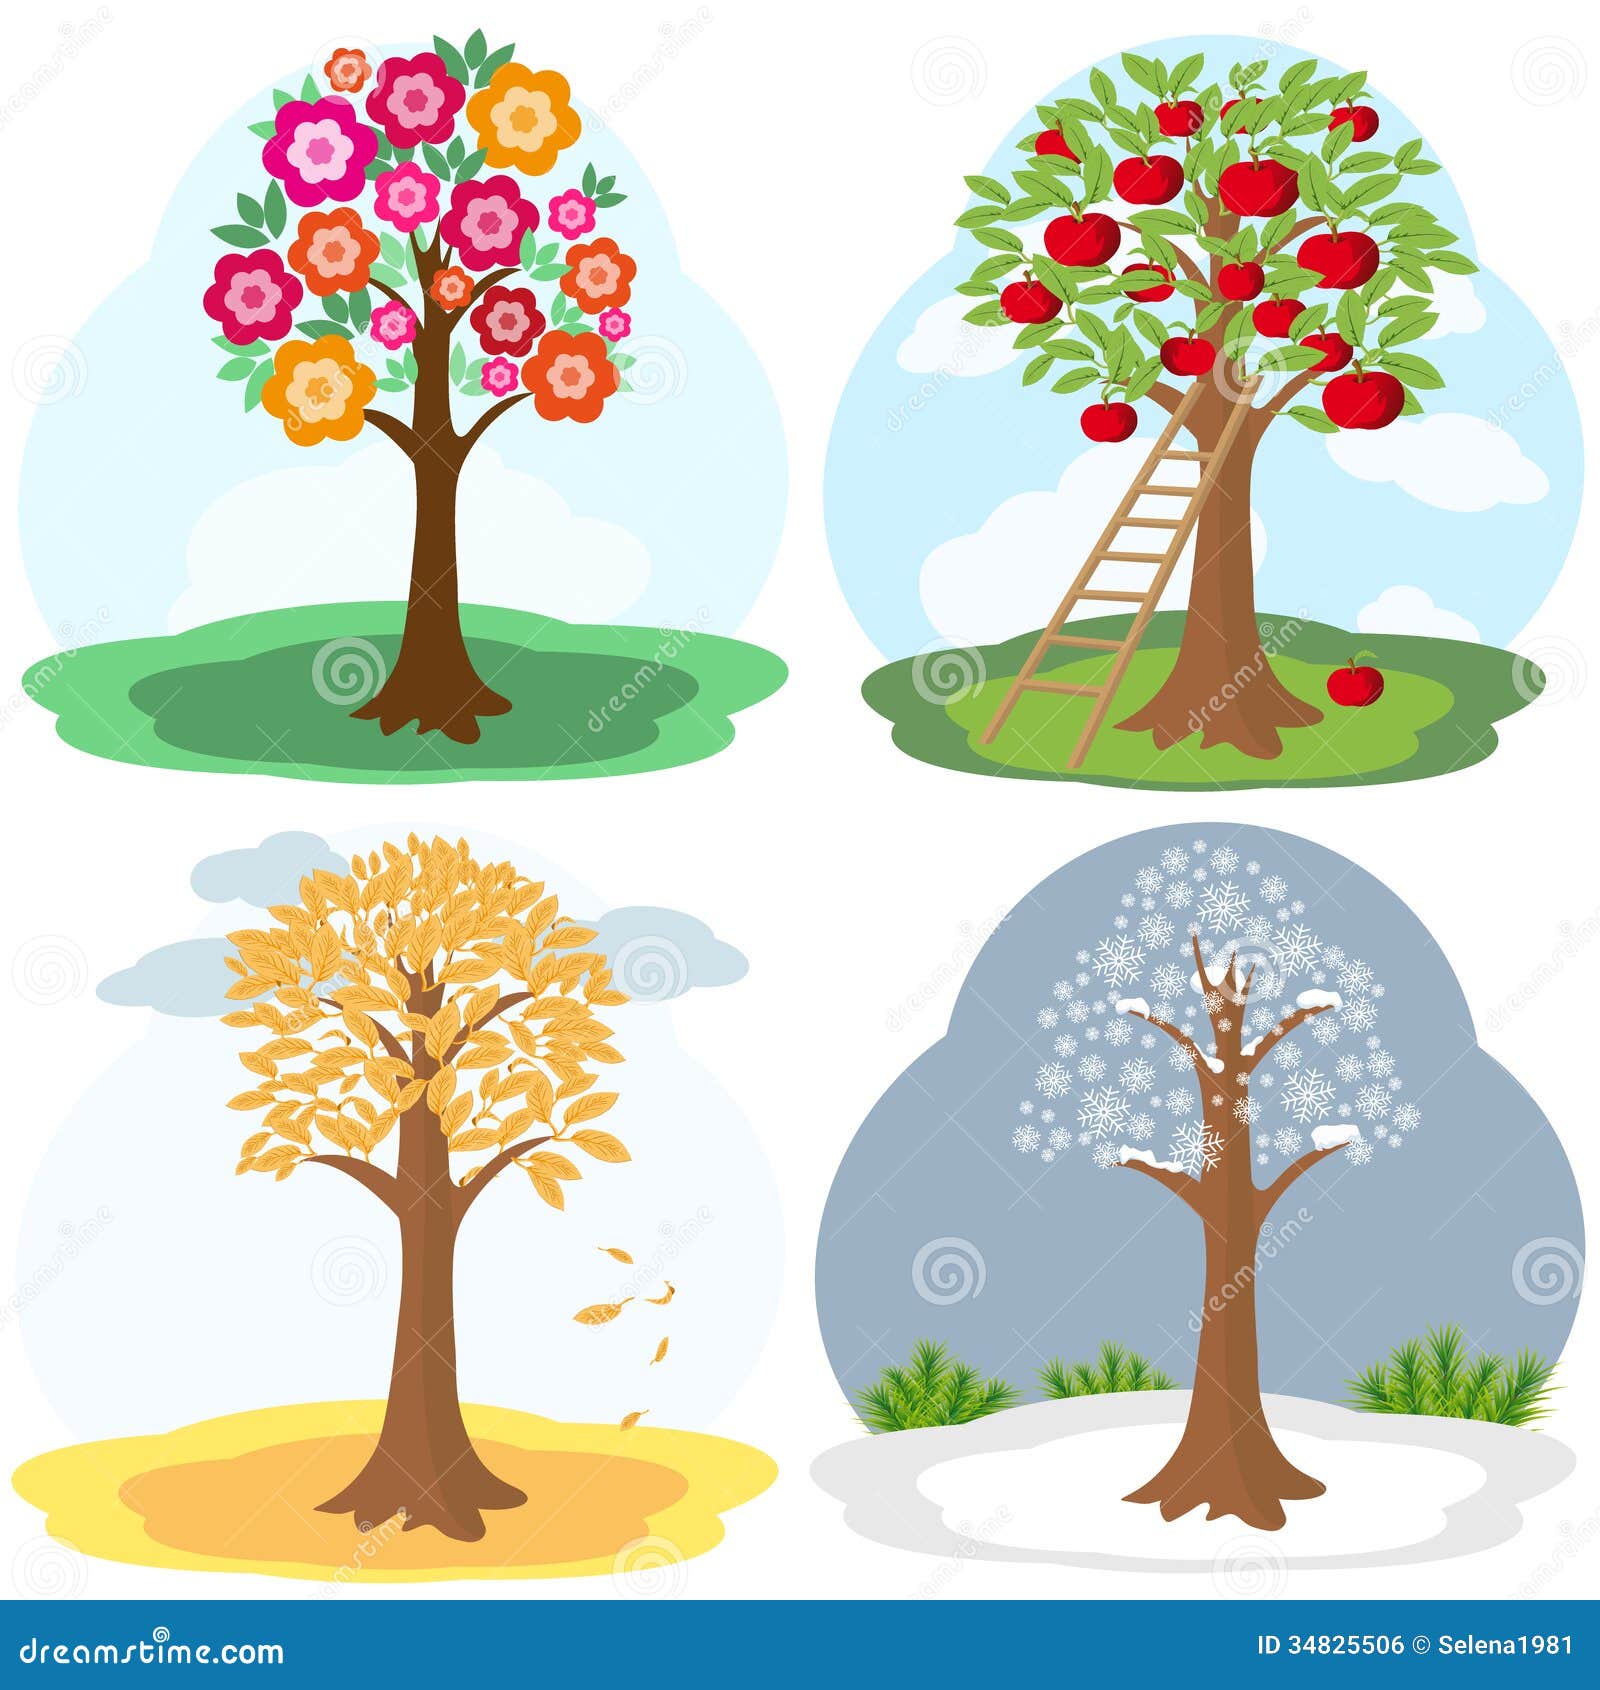 Яблоня в разные времена года. Летнее дерево для детского сада. Сезонное дерево для детского сада. Сезонное Весеннее дерево.